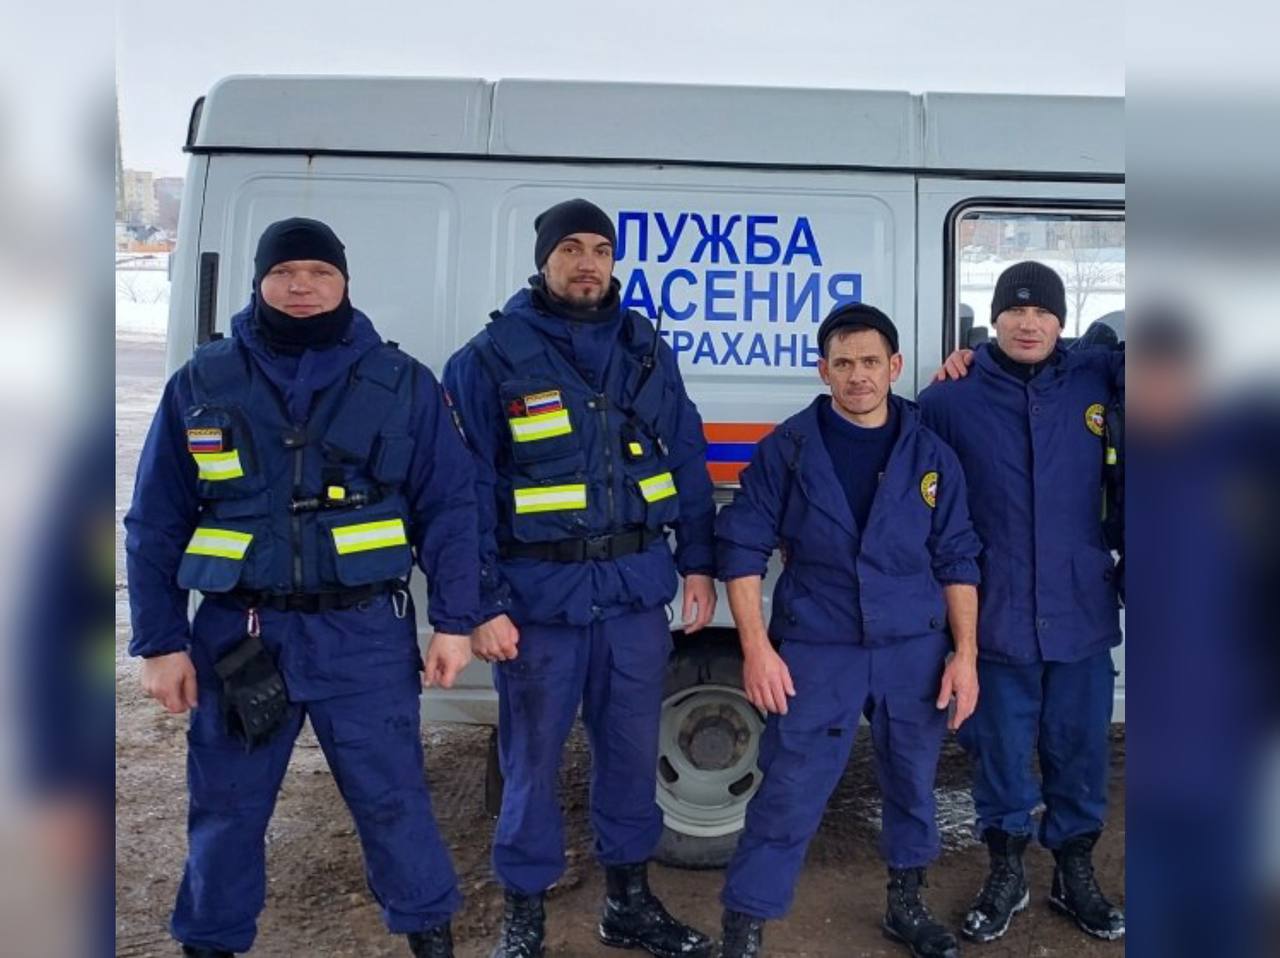 Астраханские спасатели удостоены госнаград указом президента РФ за эвакуацию на Вокзальной 